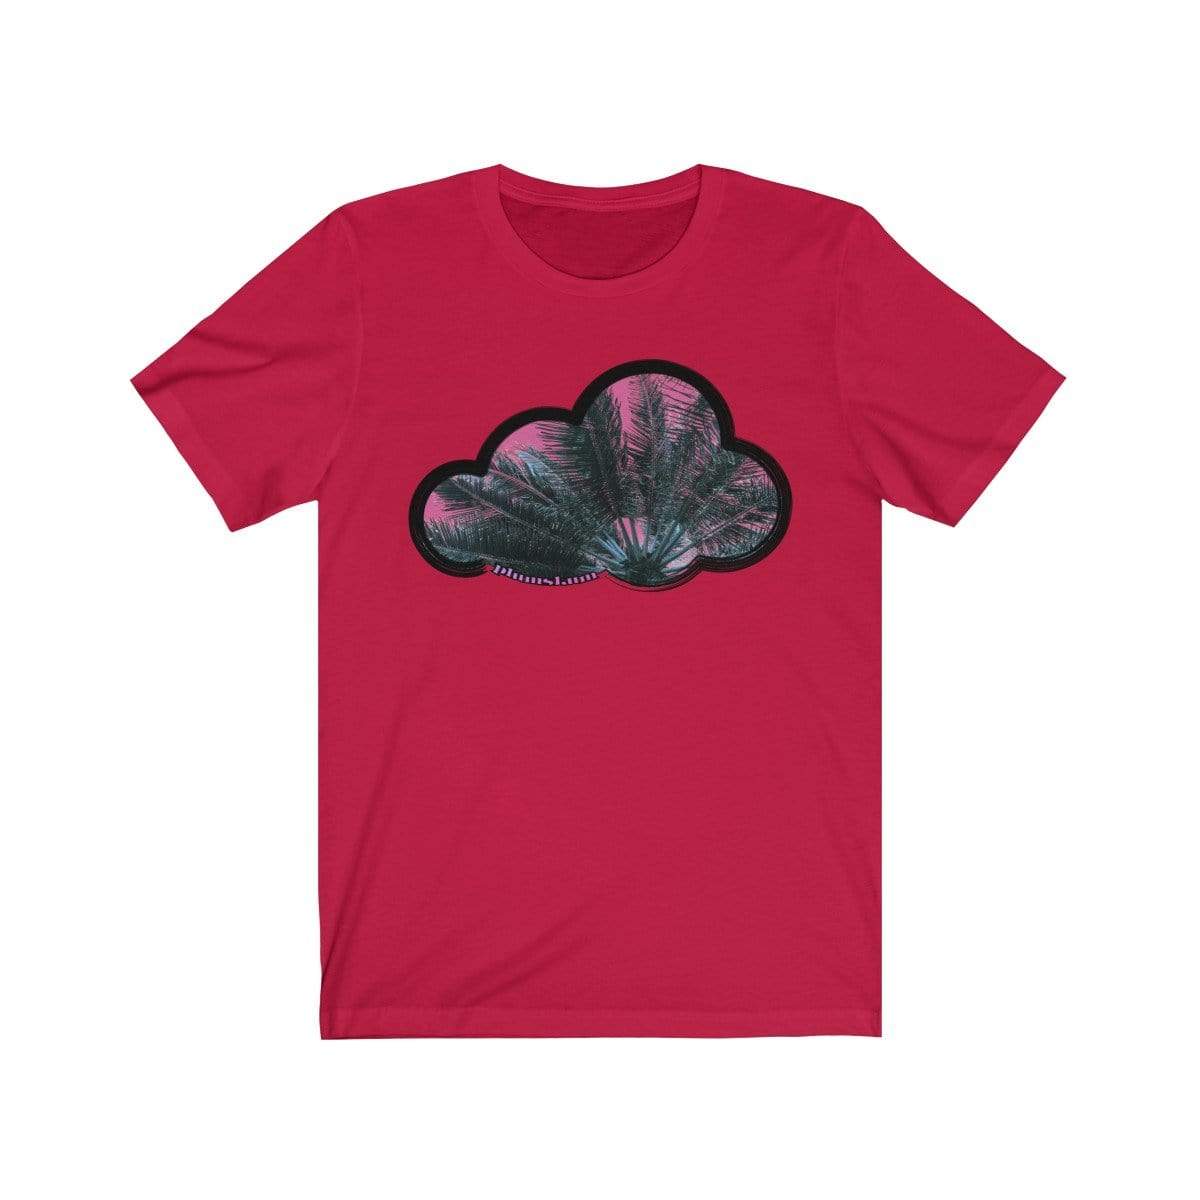 Printify T-Shirt Red / M Palm Sky Art Clouds T-Shirt